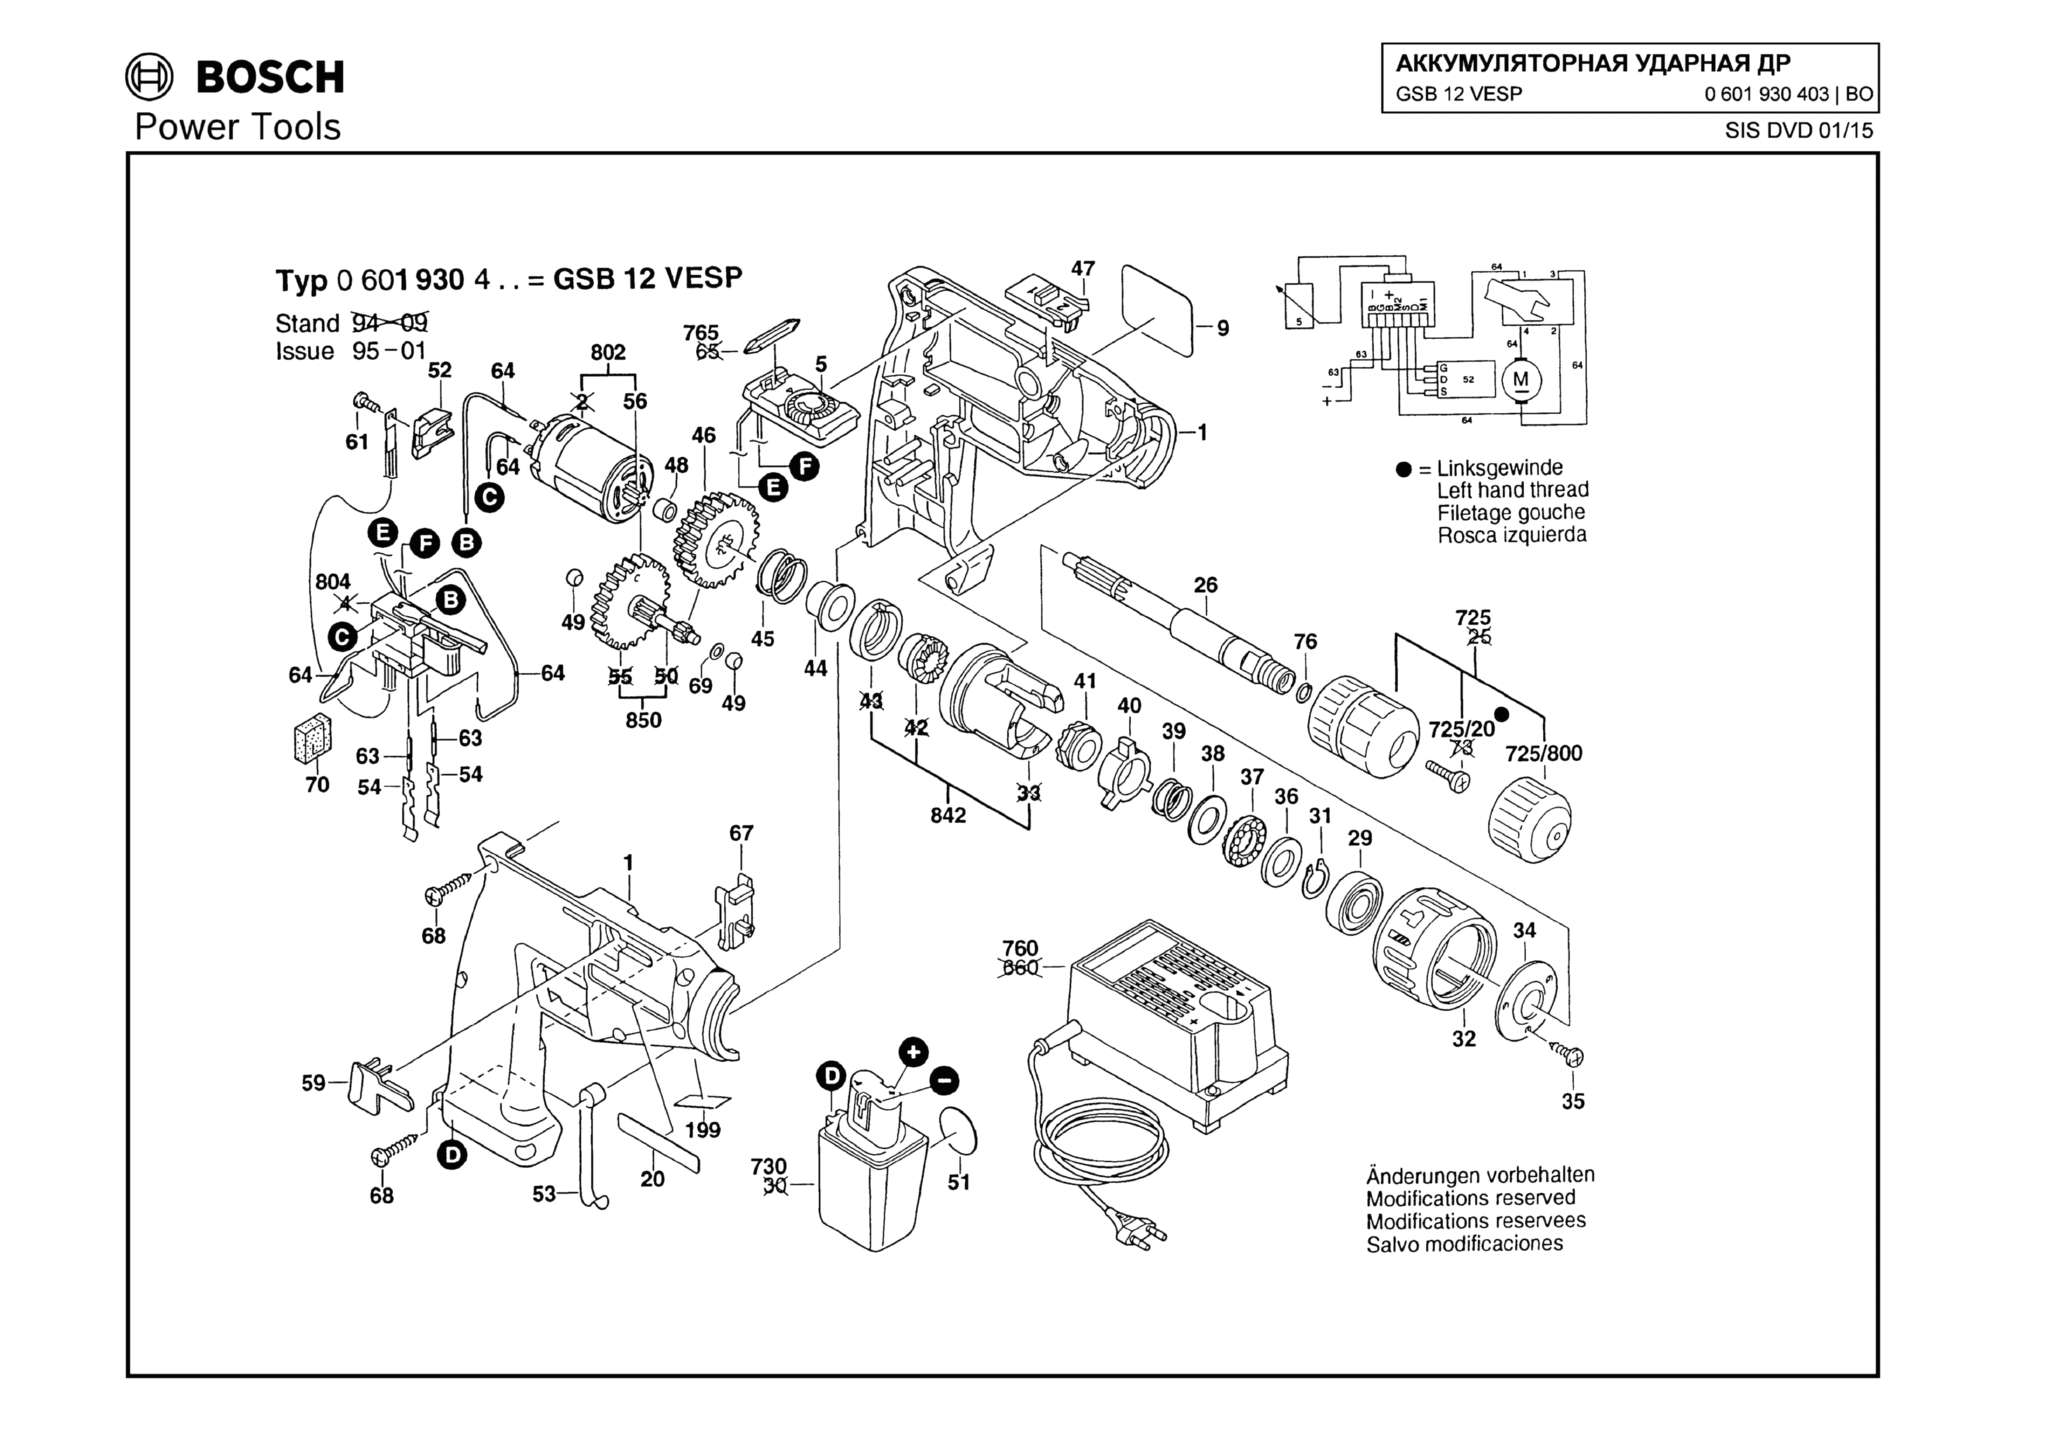 Запчасти, схема и деталировка Bosch GSB 12 VESP (ТИП 0601930403)